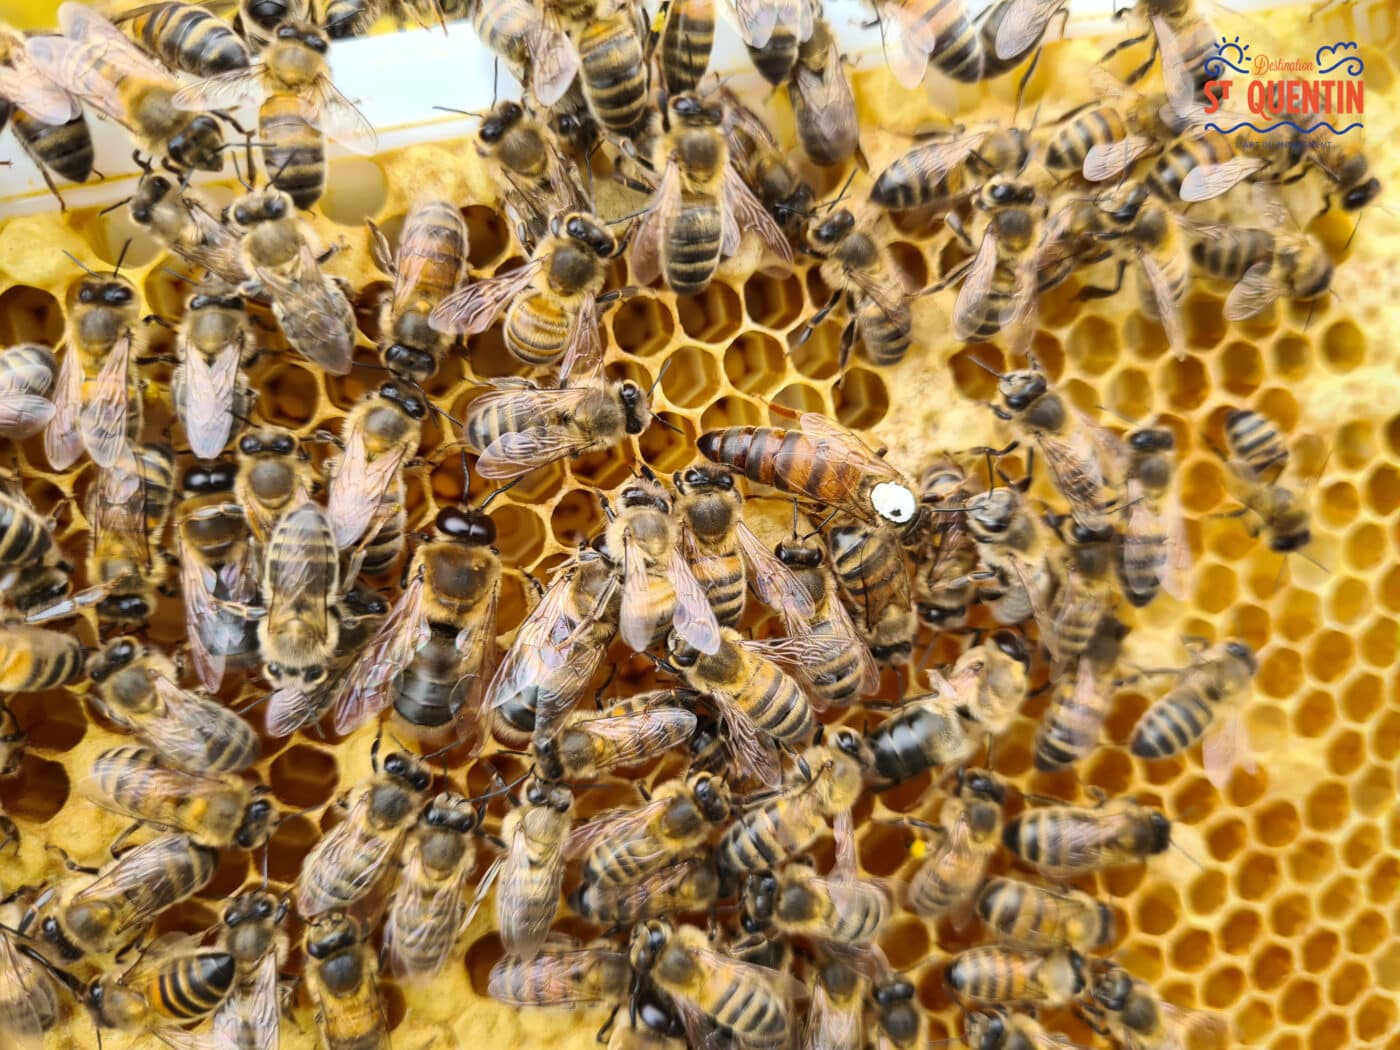 ambassadeur les abeilles de francilly 12 - Office de tourisme du Saint-Quentinois